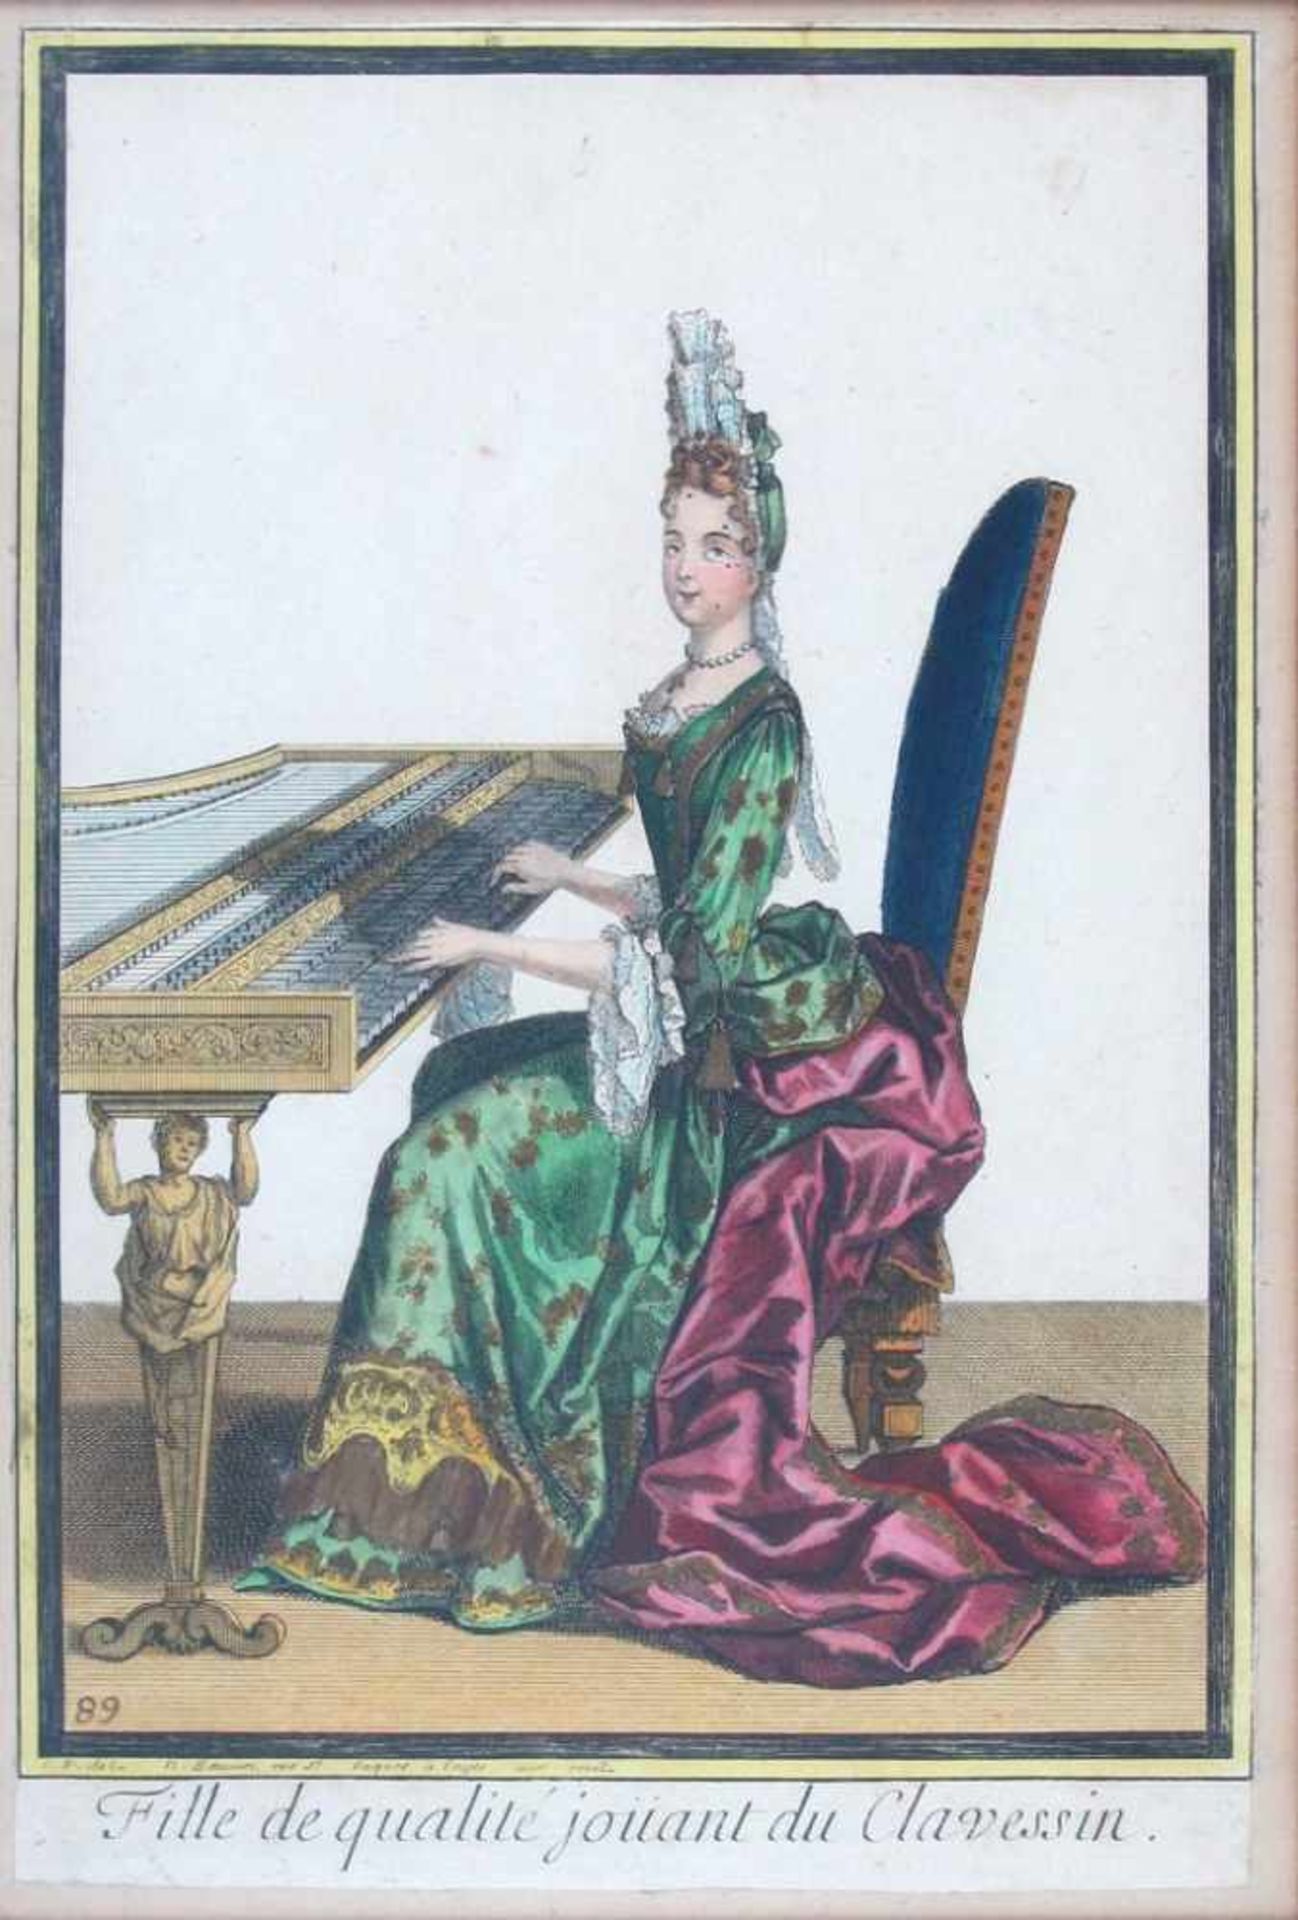 Fille de qualité jouant du Clavessin. Kol. Kupferstich von Nicolas Bonnart nach R. Bonnart, um 1700.